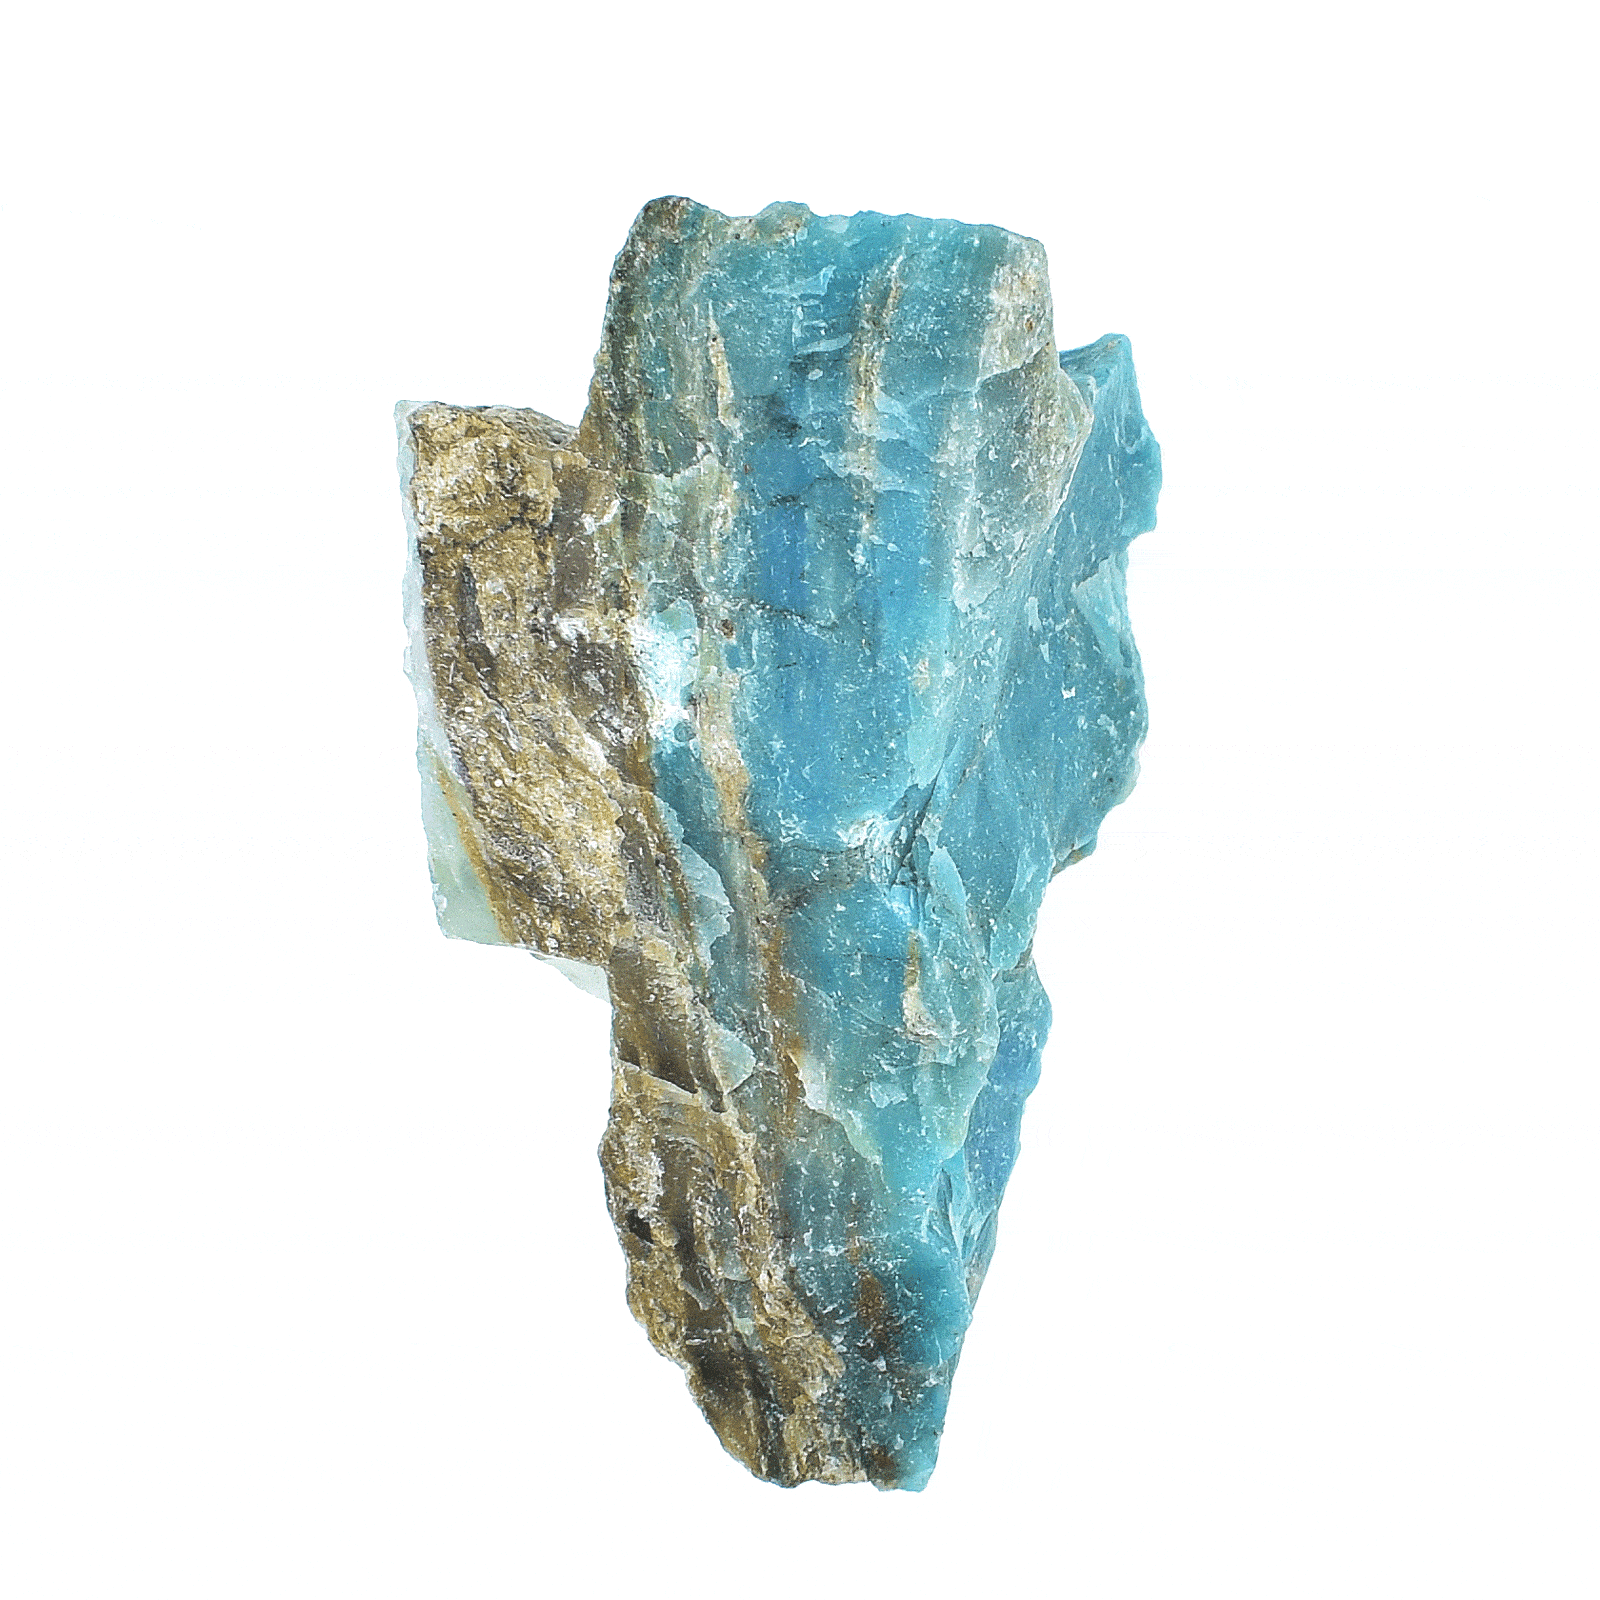 Ακατέργαστο κομμάτι φυσικής πέτρας μπλε Οπαλίου, μεγέθους 4,5cm. Αγοράστε online shop.